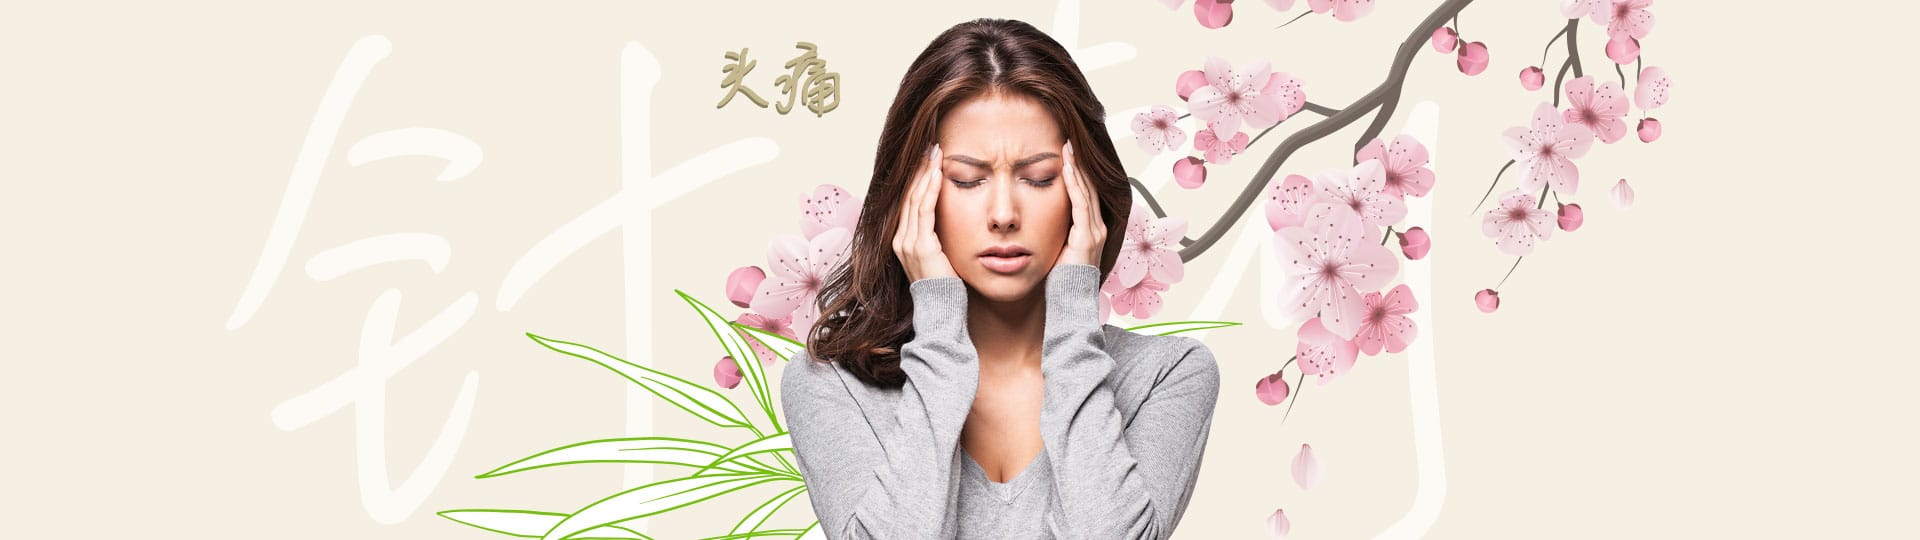 טיפול דיקור סיני לכאבי ראש